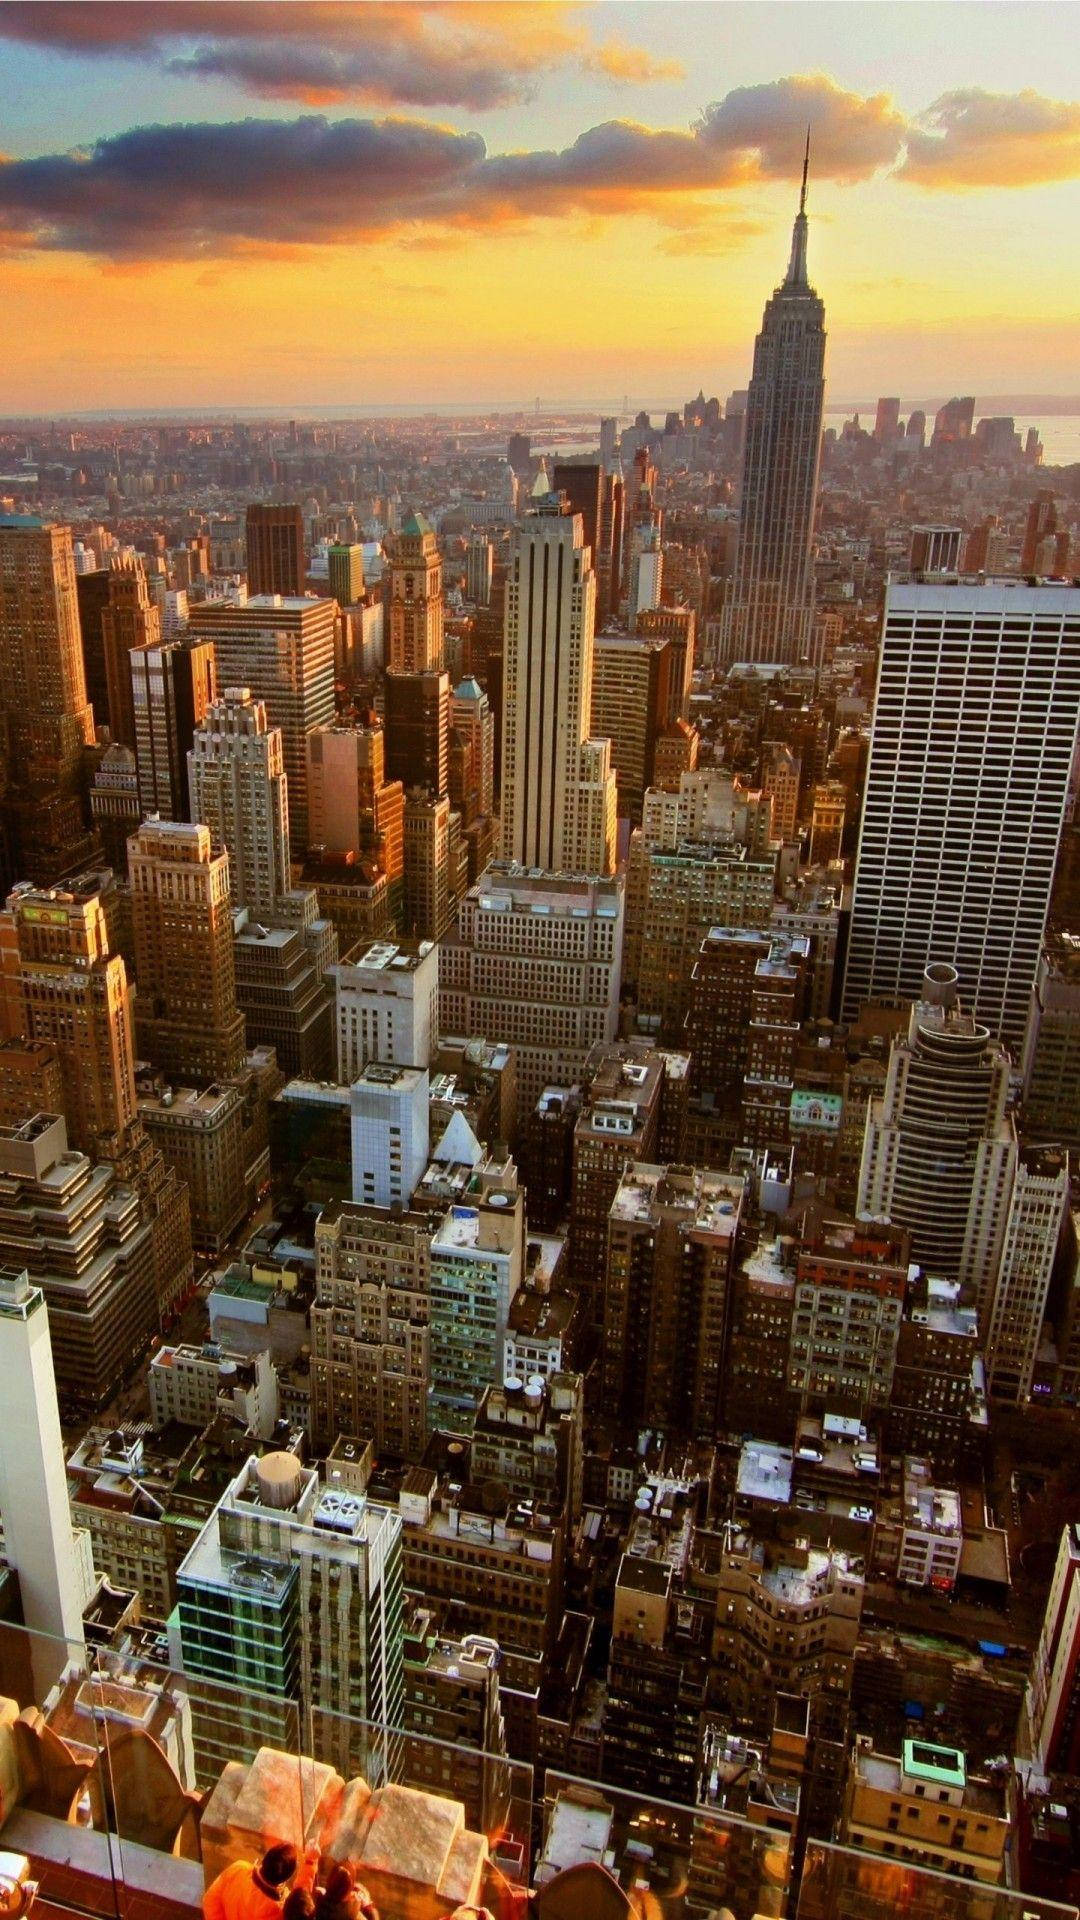 Tận hưởng khung cảnh bất tận của thành phố New York trên màn hình nền của chiếc iPhone của bạn. Nơi đây luôn đem lại cảm giác sôi động và đầy năng lượng cho bất kỳ ai. Hãy nhấn vào hình ảnh để tận hưởng vẻ đẹp thành phố này.